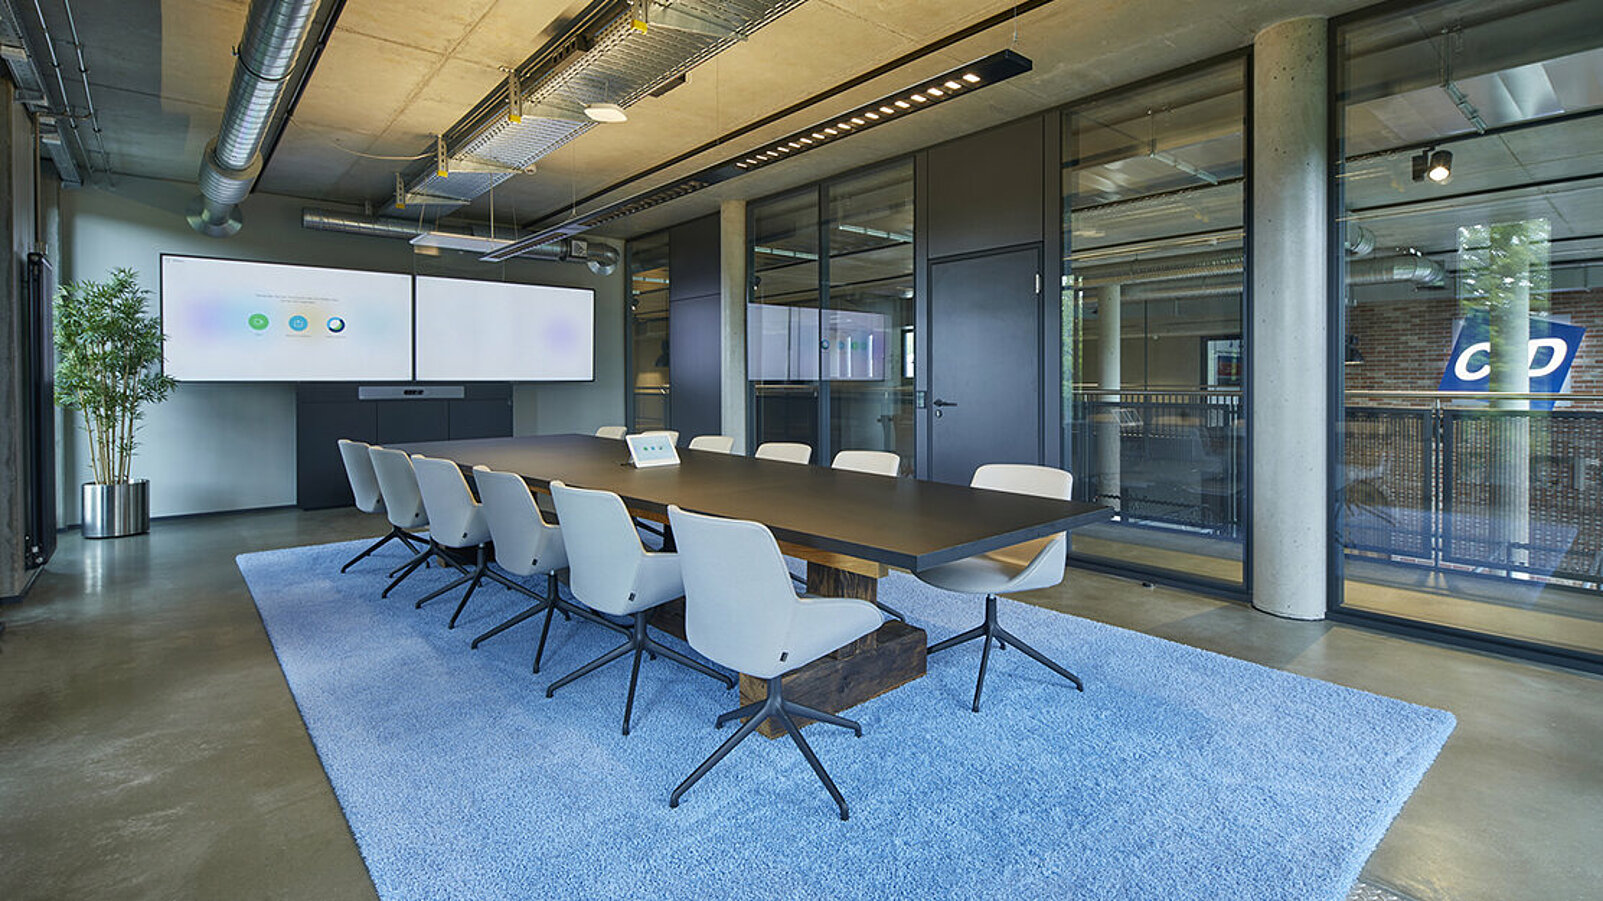 An einem langen Besprechungtisch stehen taubenblaue Stühle auf einem flauschigen Teppich in der selben Farbe. Vor Kopf hängt ein sehr breiter Monitor für Videokonferenzen.